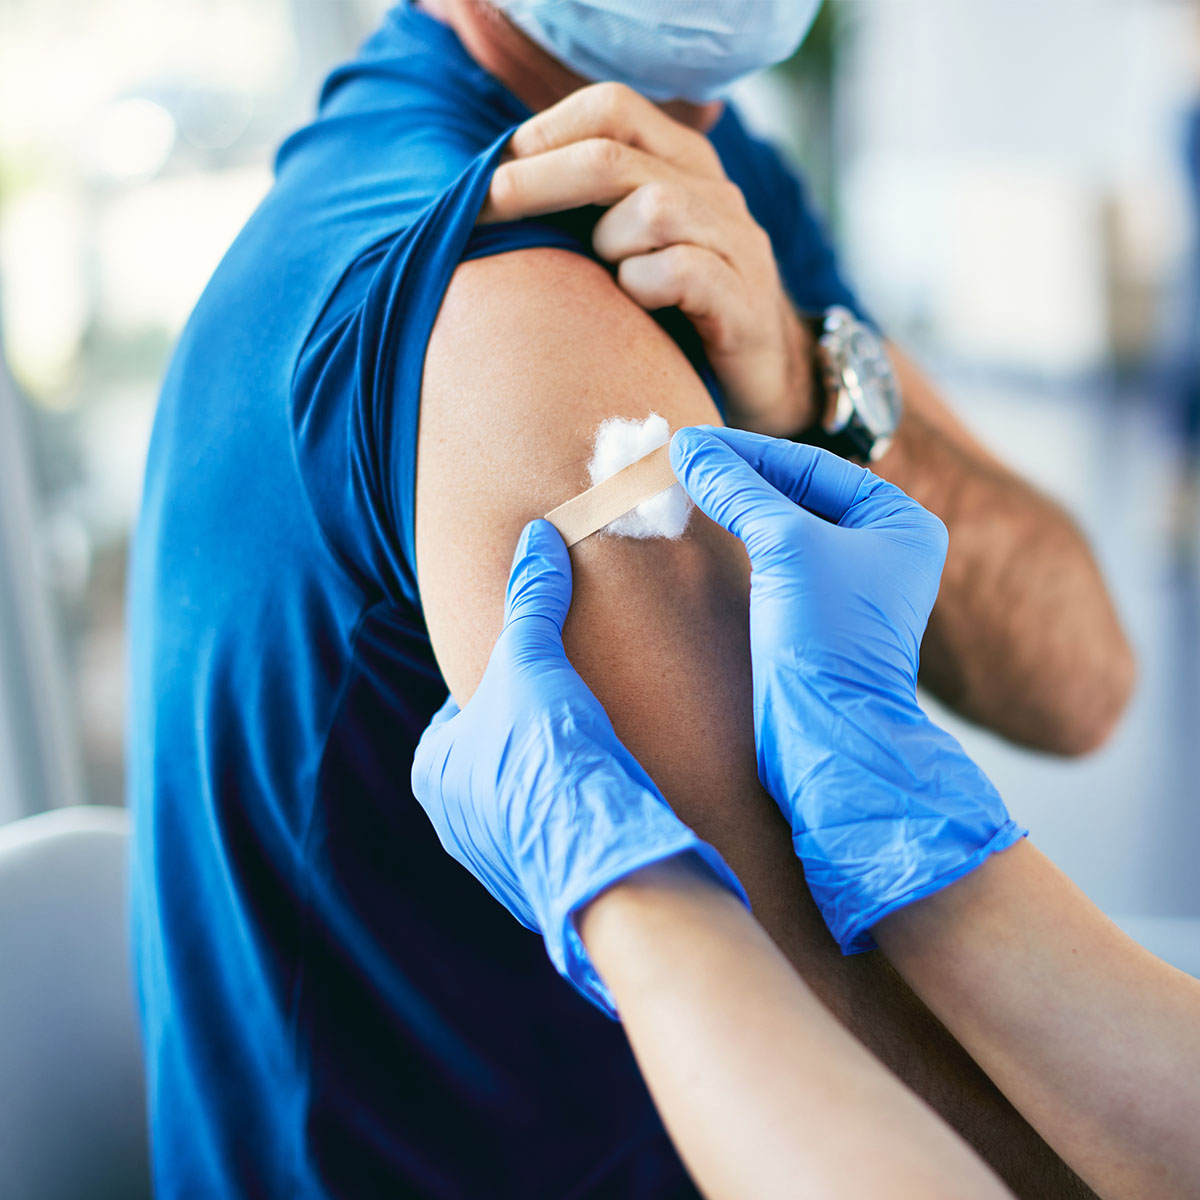 Un paciente recibe un apósito después de la vacuna.